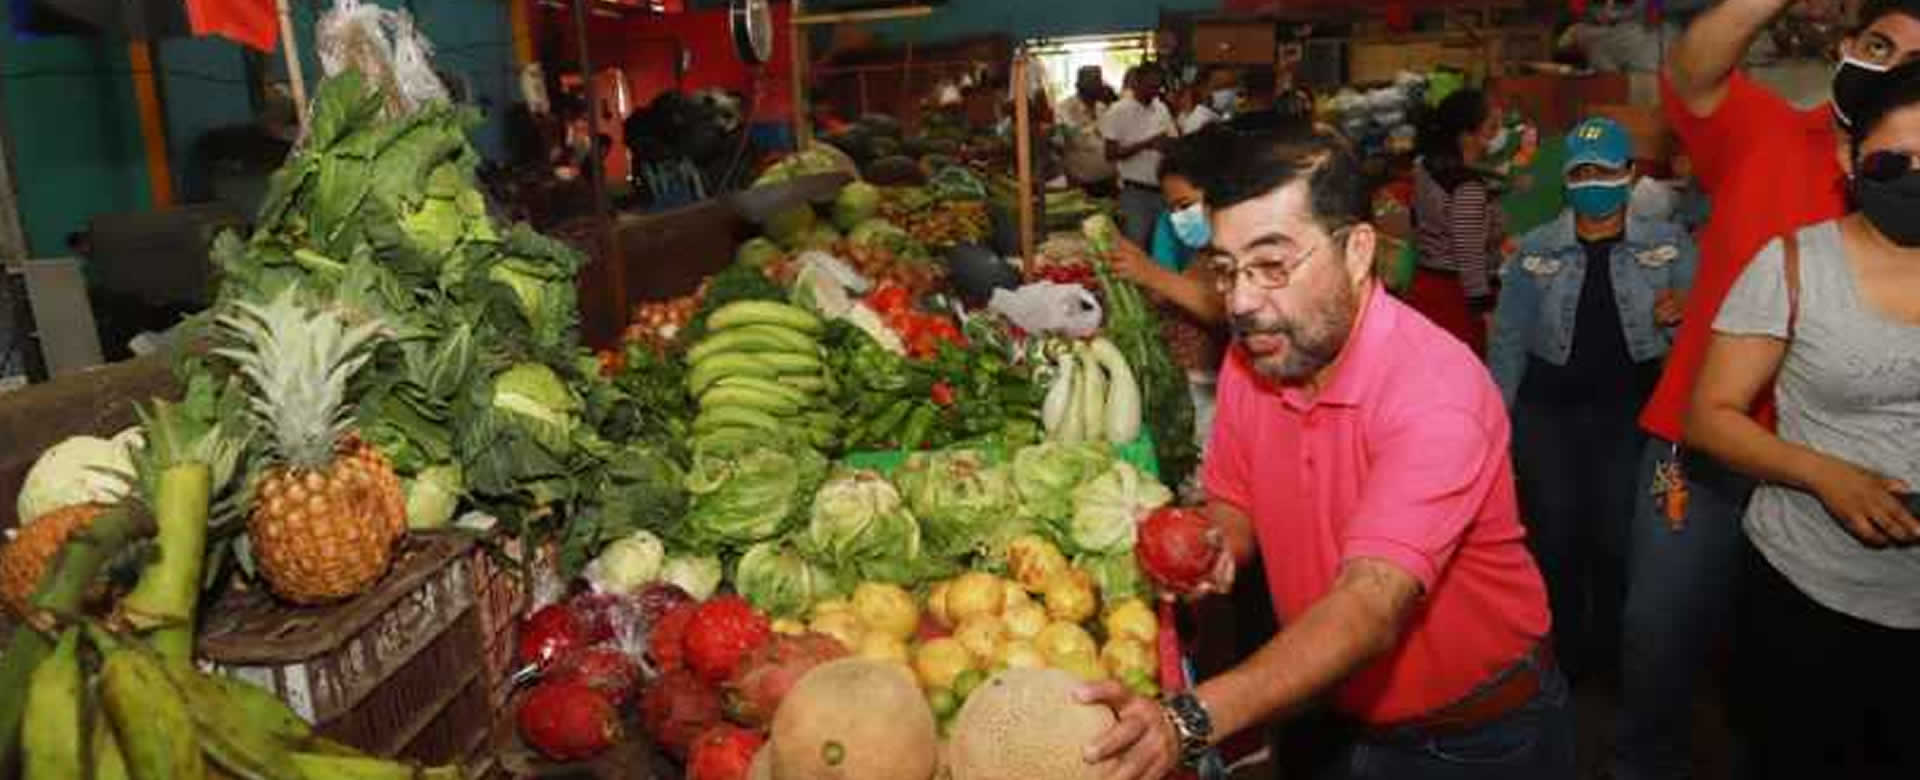 Mercado Periférico celebra las Fiestas Patrias con increíbles descuentos